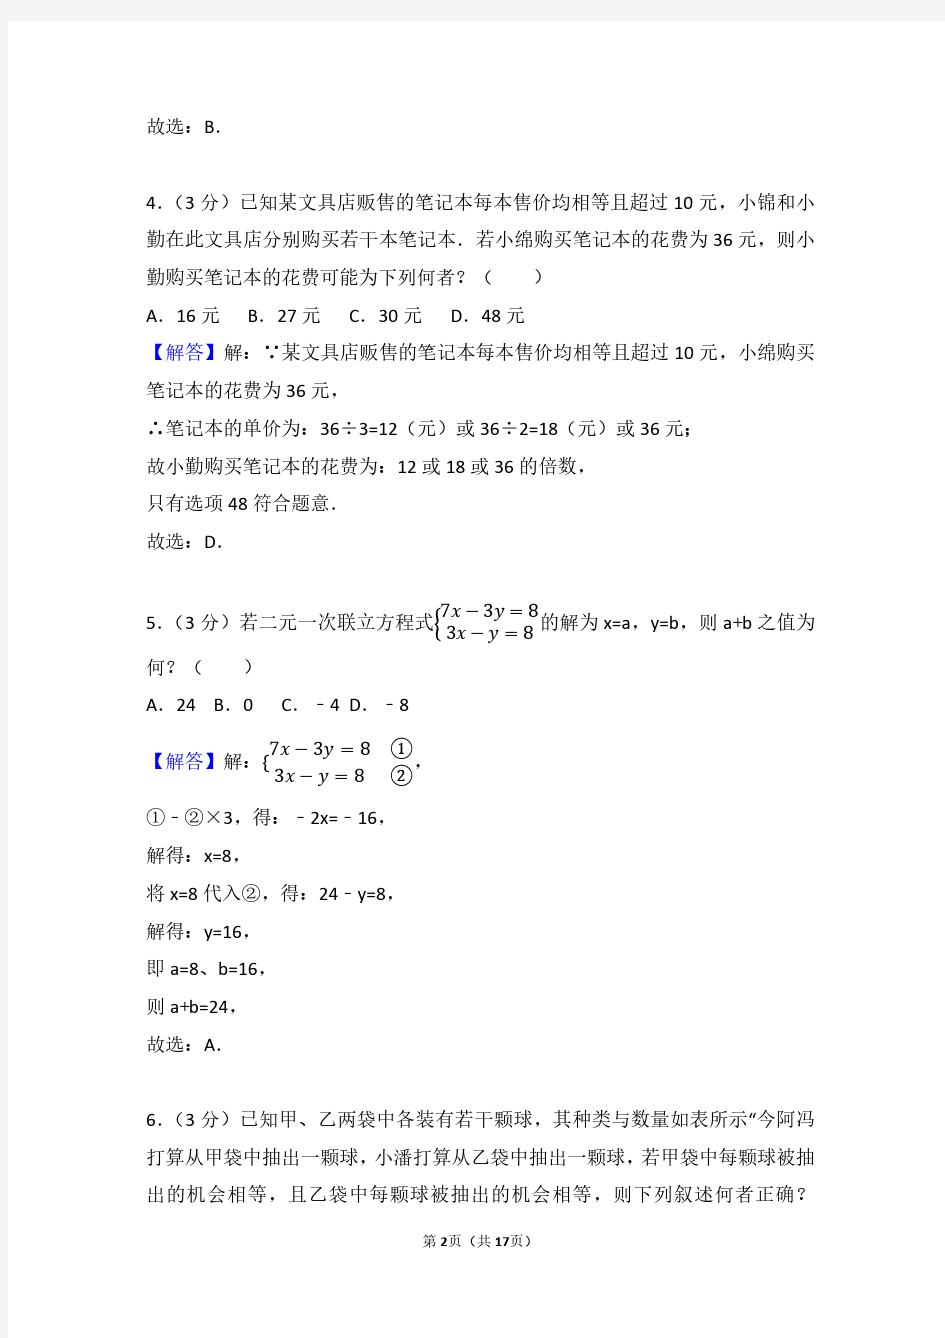 2018年台湾省中考数学试卷(带解析)